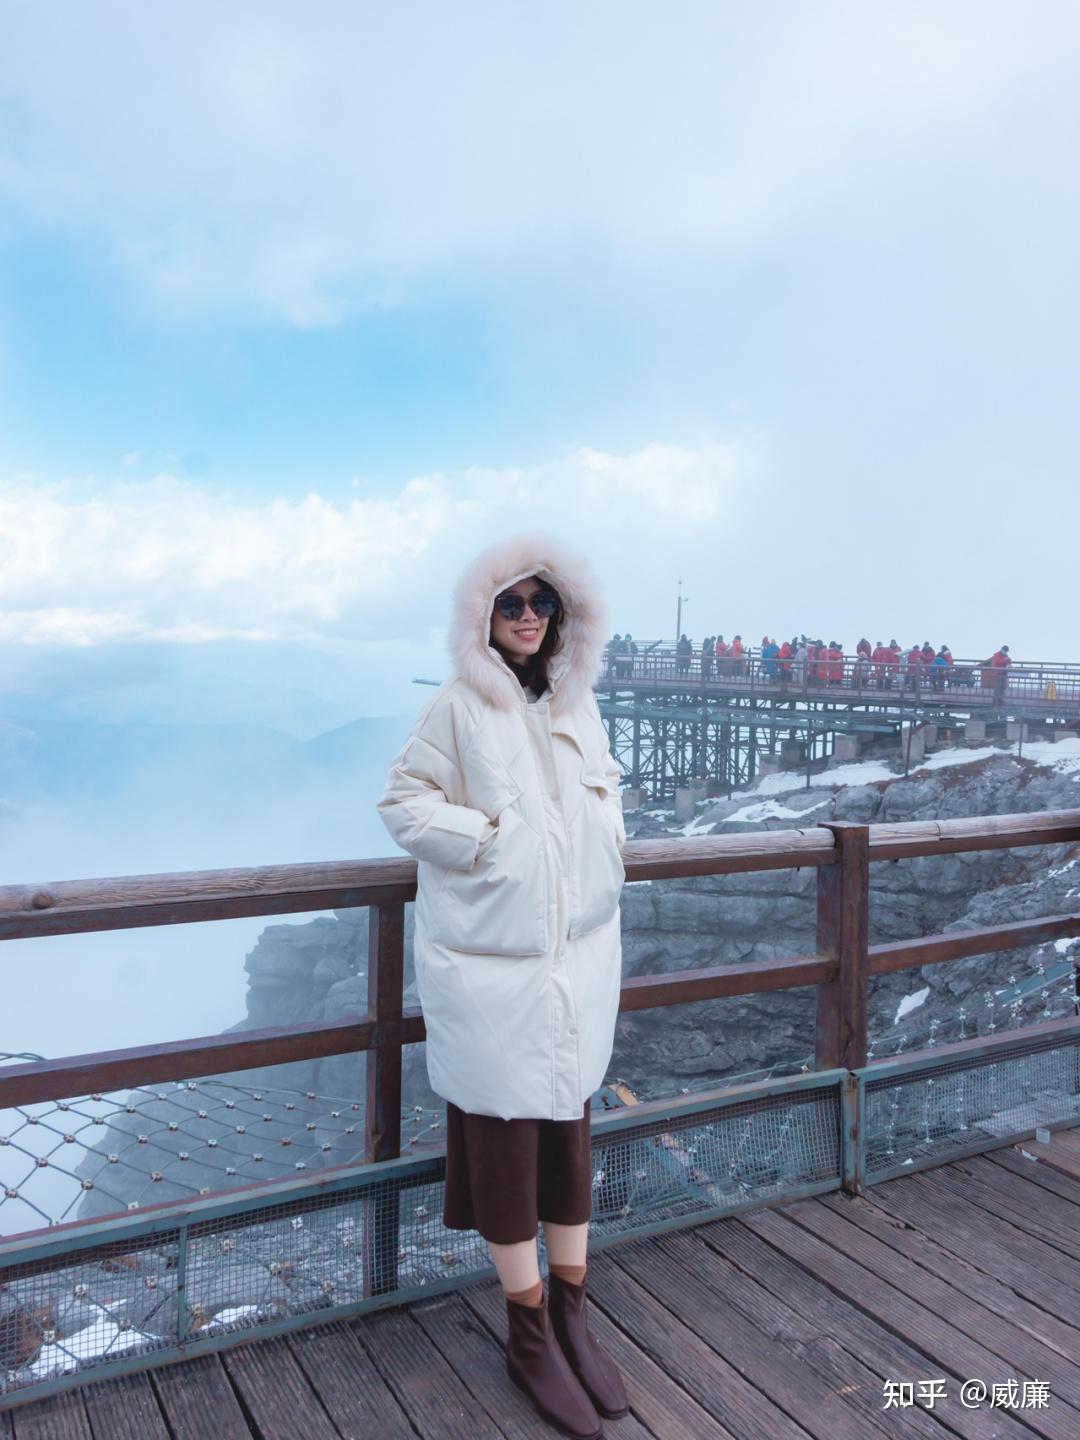 玉龙雪山是丽江有名的景点之一，什么时候去游玩玉龙雪山最好呢？|云彩|玉龙雪山|丽江_新浪新闻